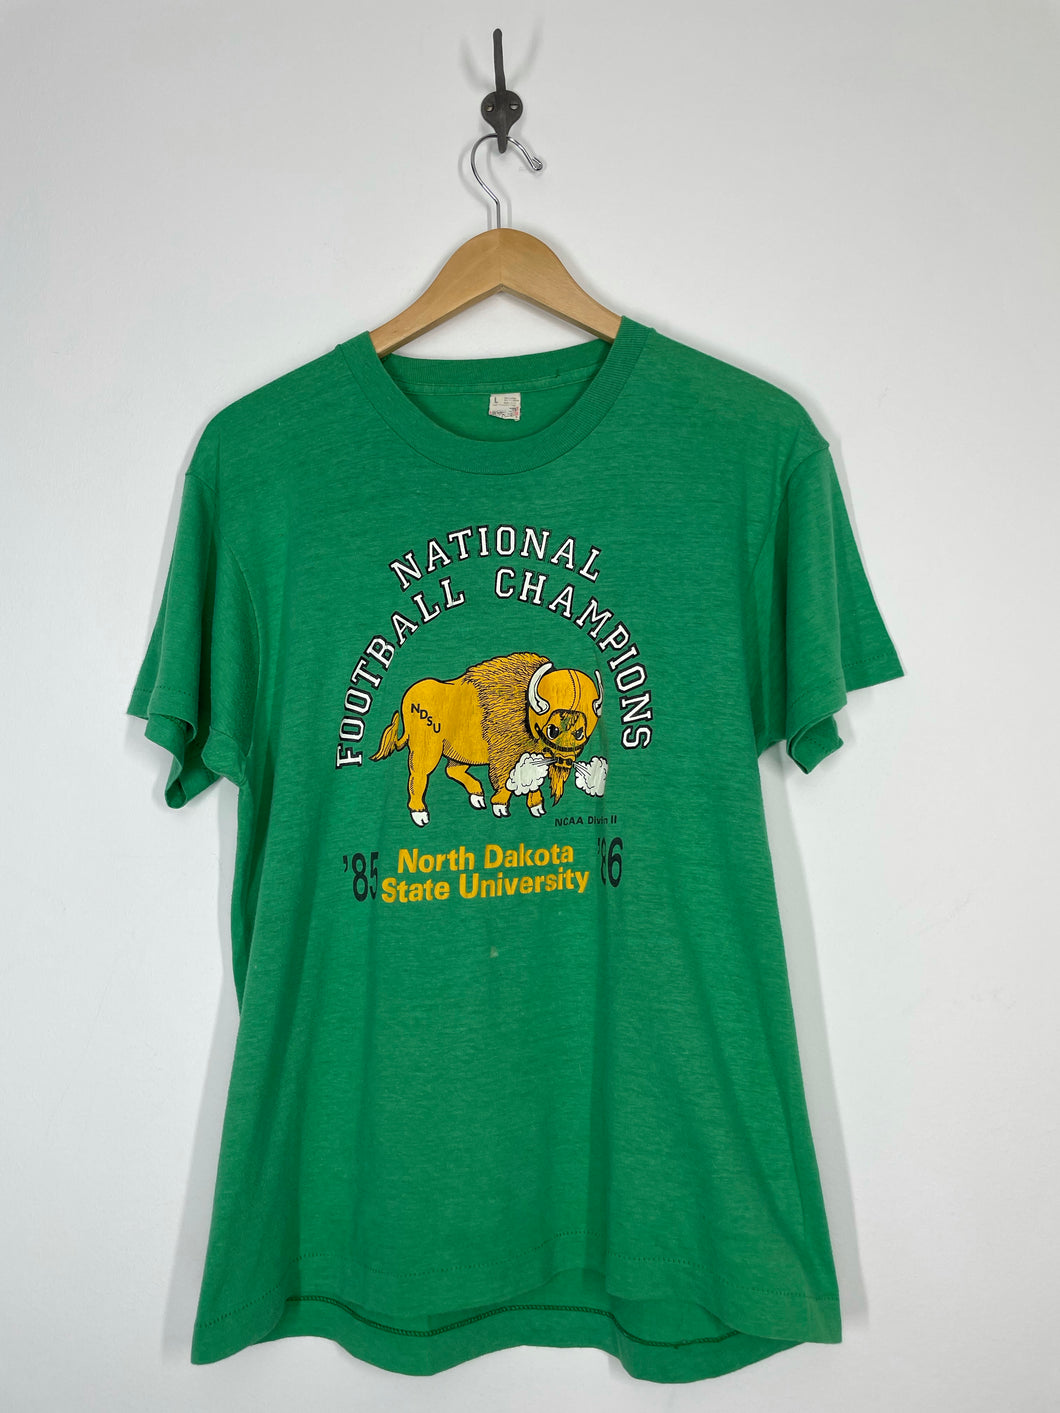 NDSU North Dakota State University National Football Champions 1985 - 1986 T Shirt - Screen Stars - L